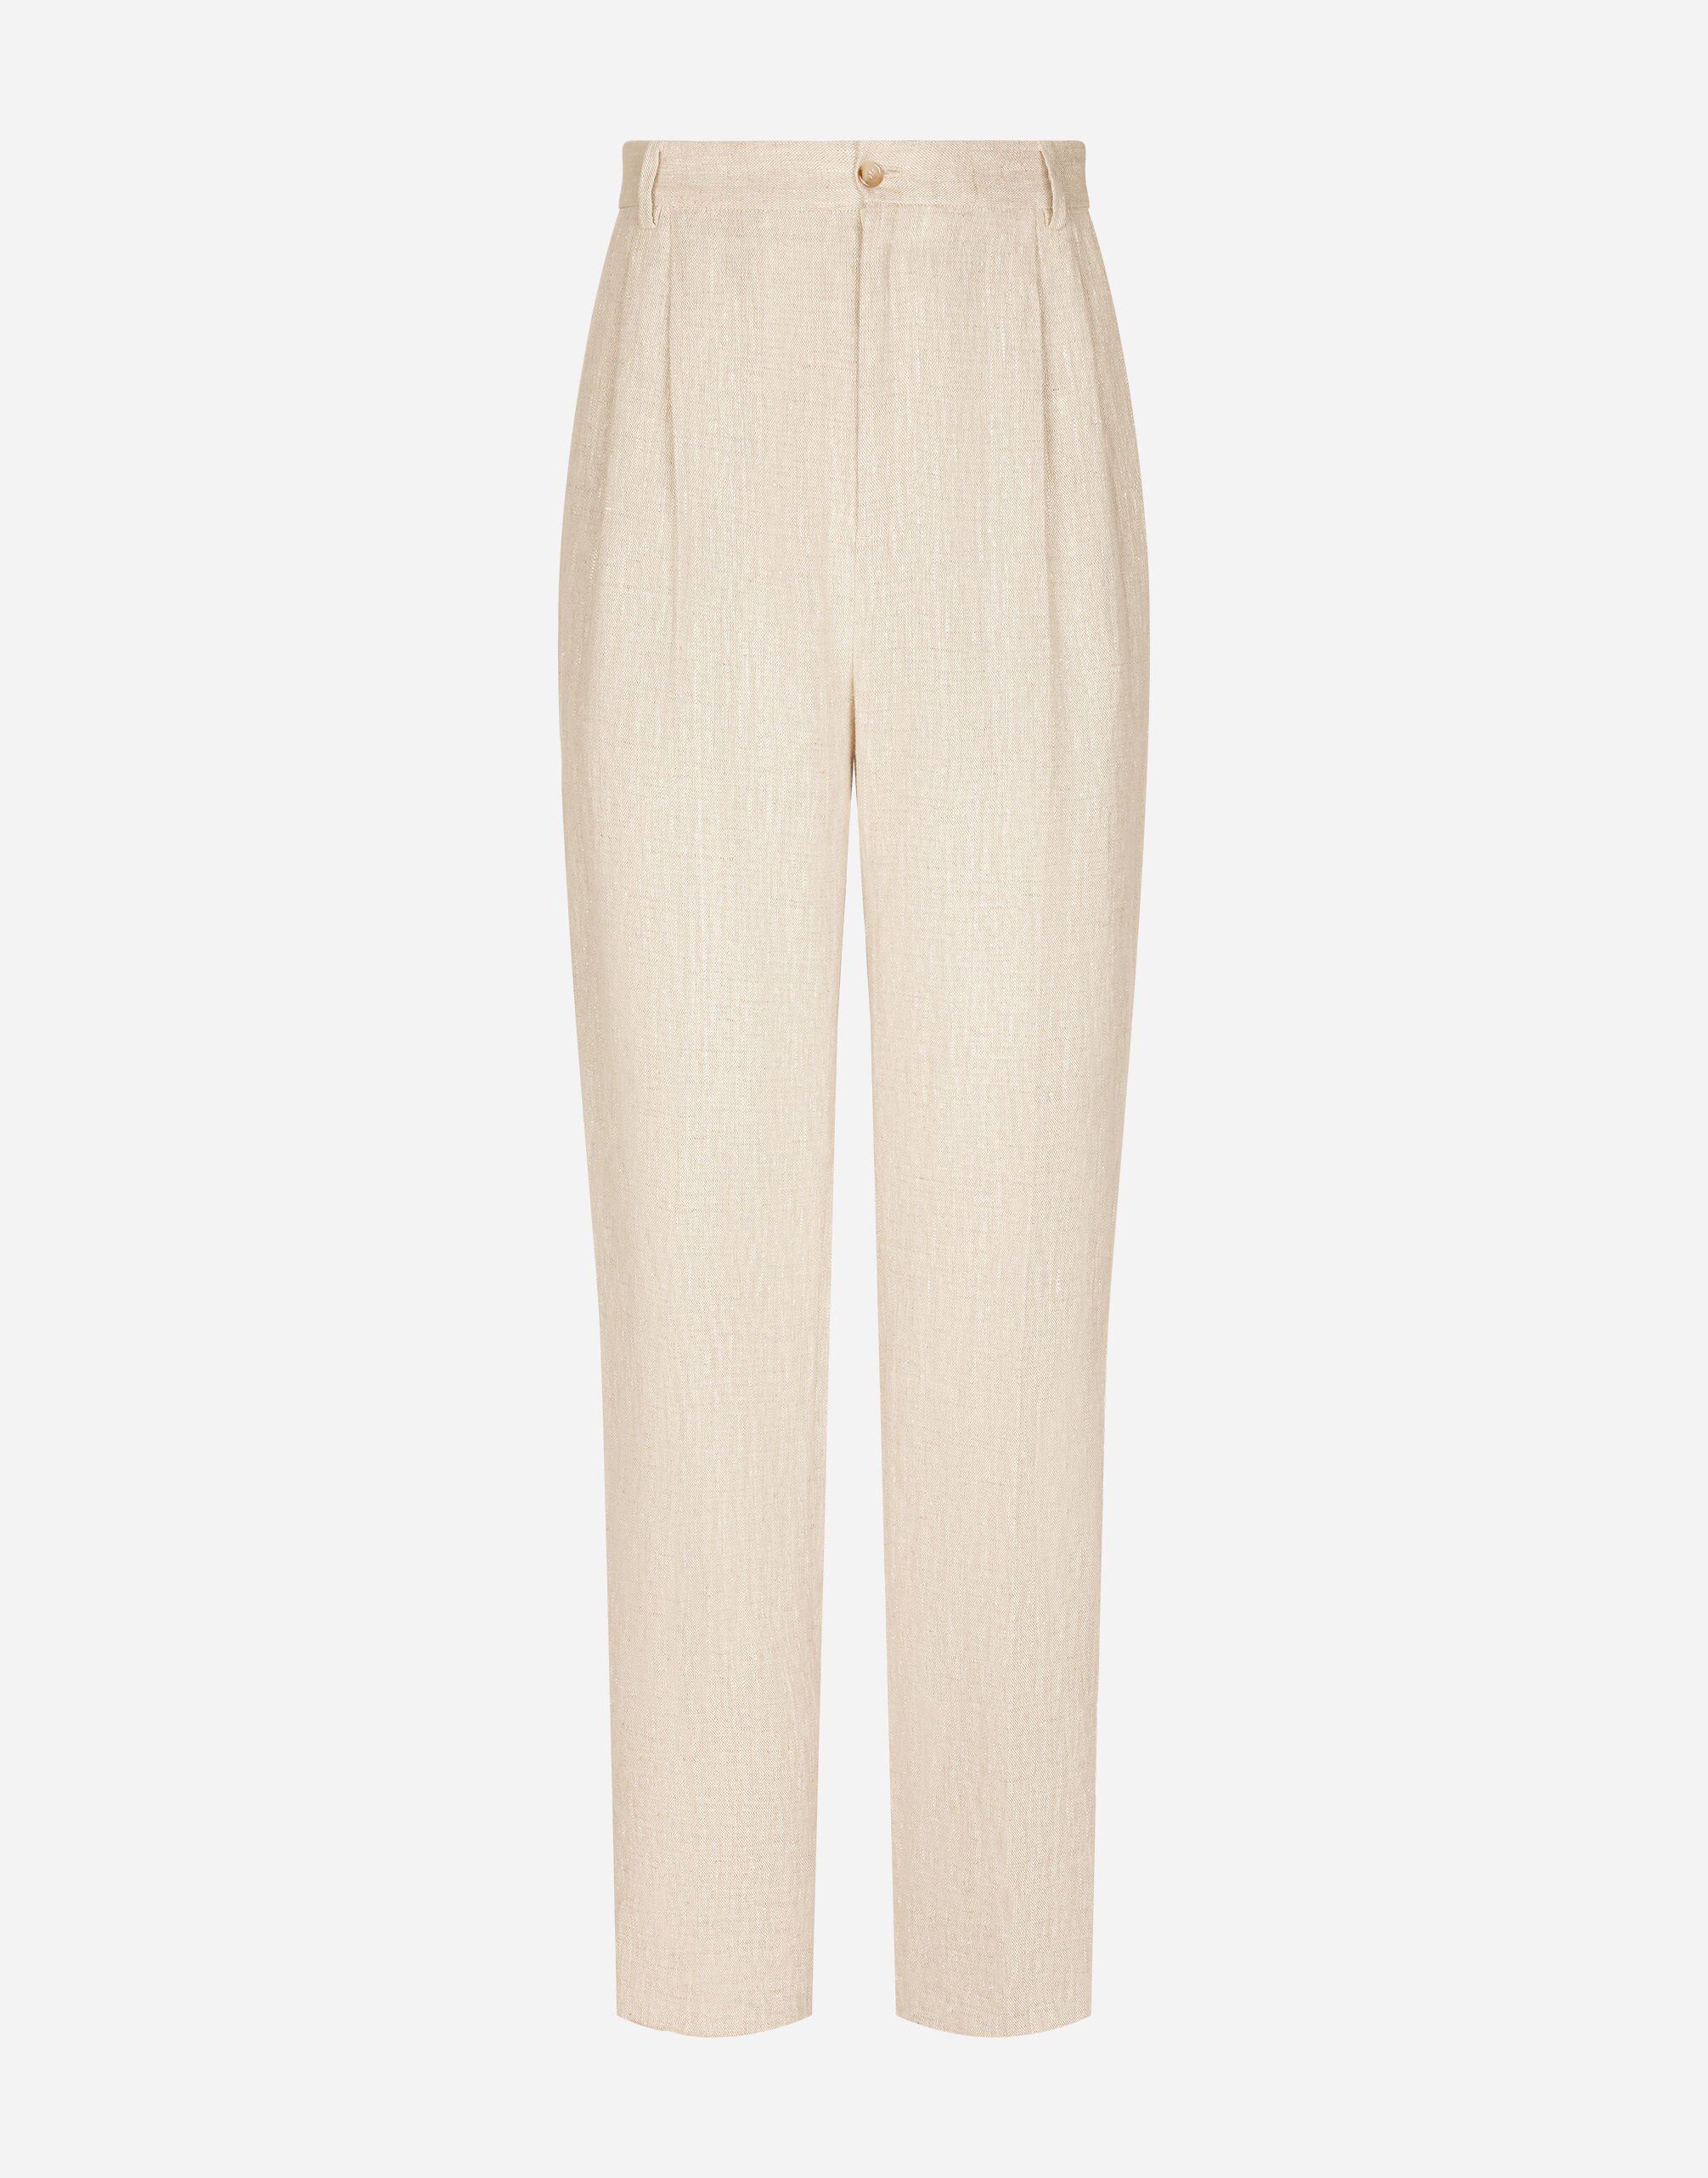 Dolce & Gabbana Tailored linen pants White VG4444VP287